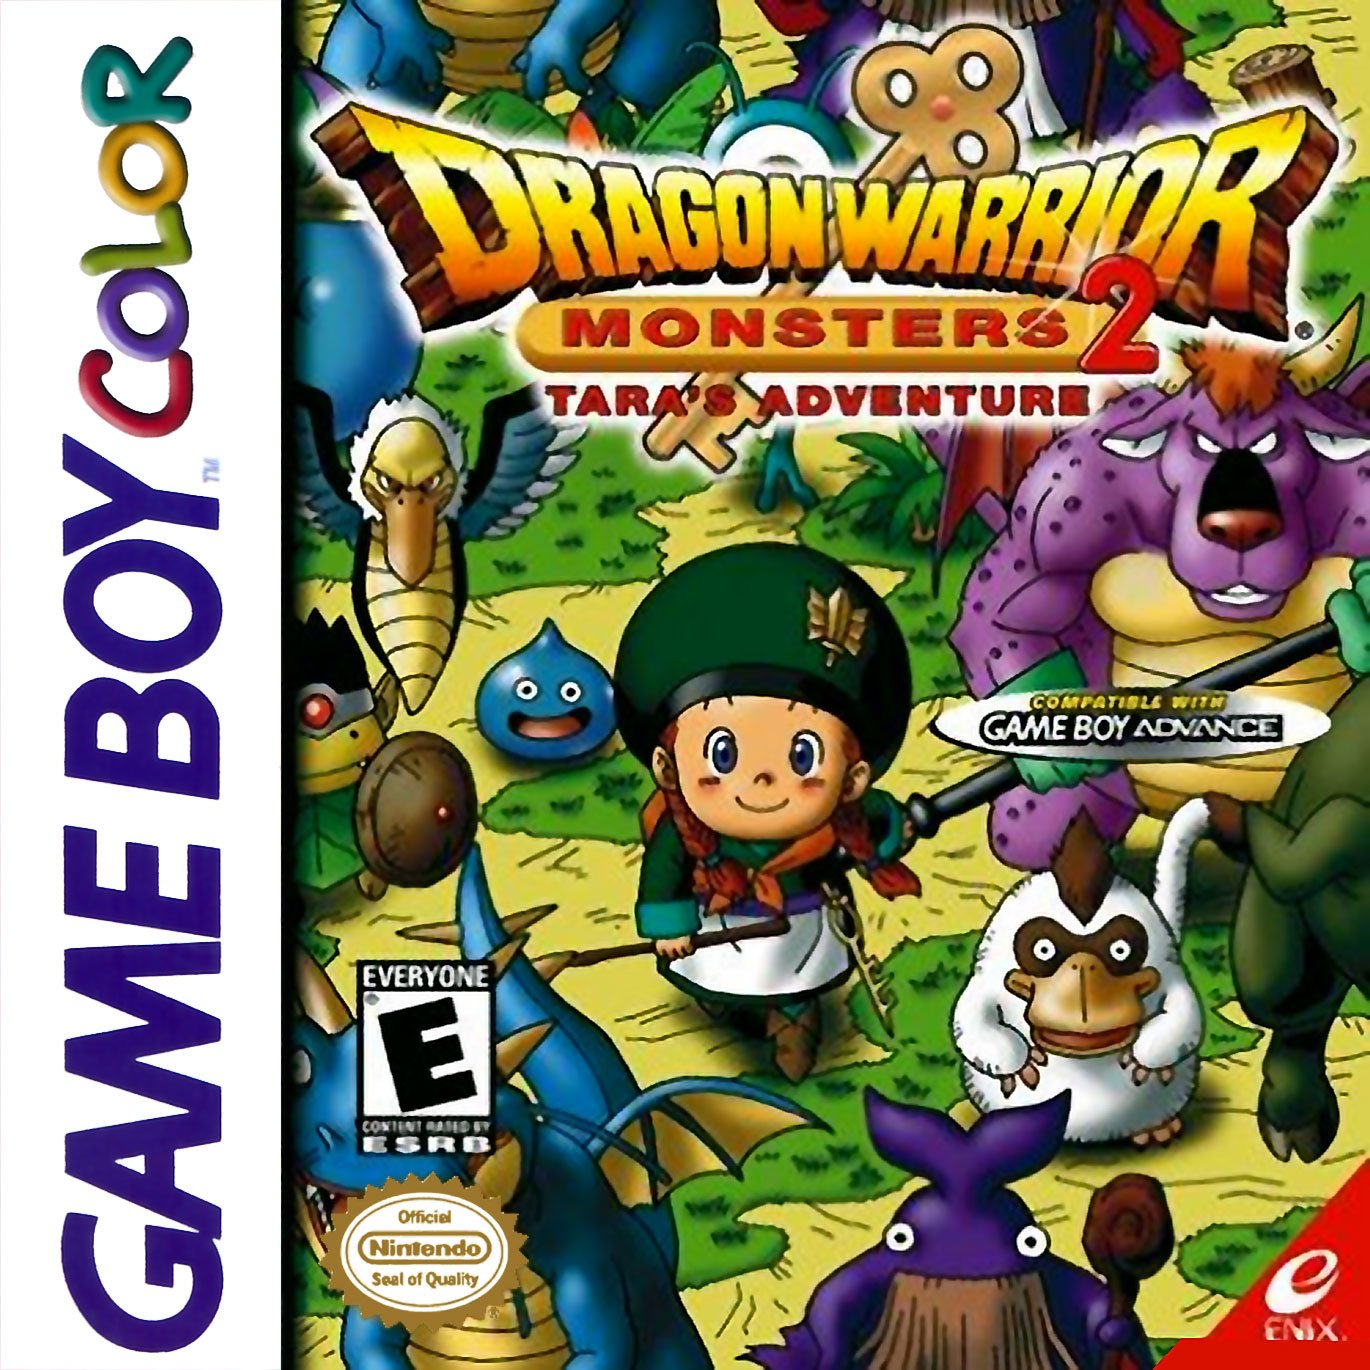 Caratula de Dragon Warrior Monsters 2 - Tara's Adventure para Game Boy Color